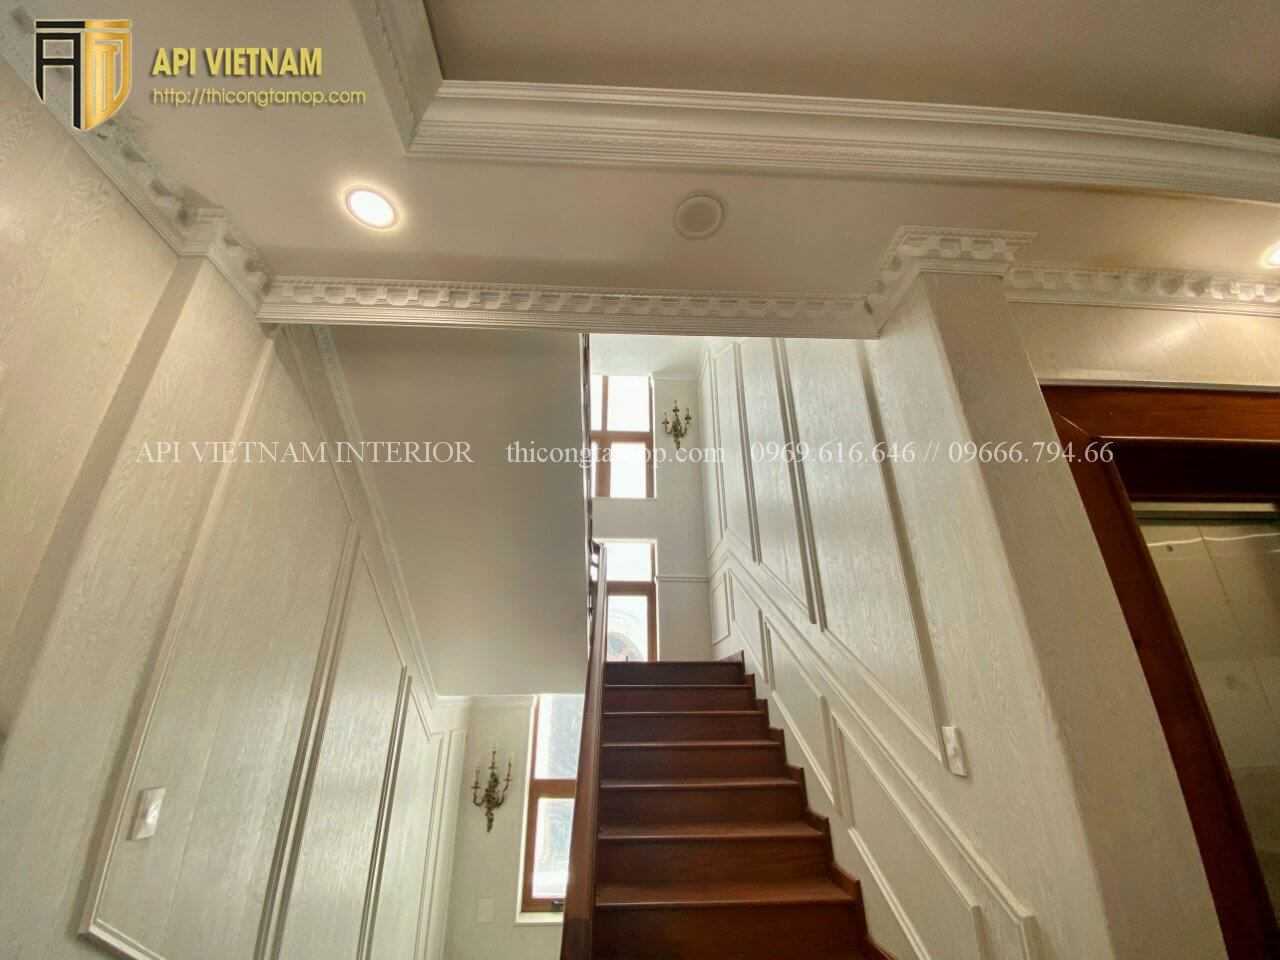 Hình ảnh khu vực hành lang lên tầng của siêu biệt thự sử dụng tấm nhựa ốp tường vân gỗ sồi nâu xẫm